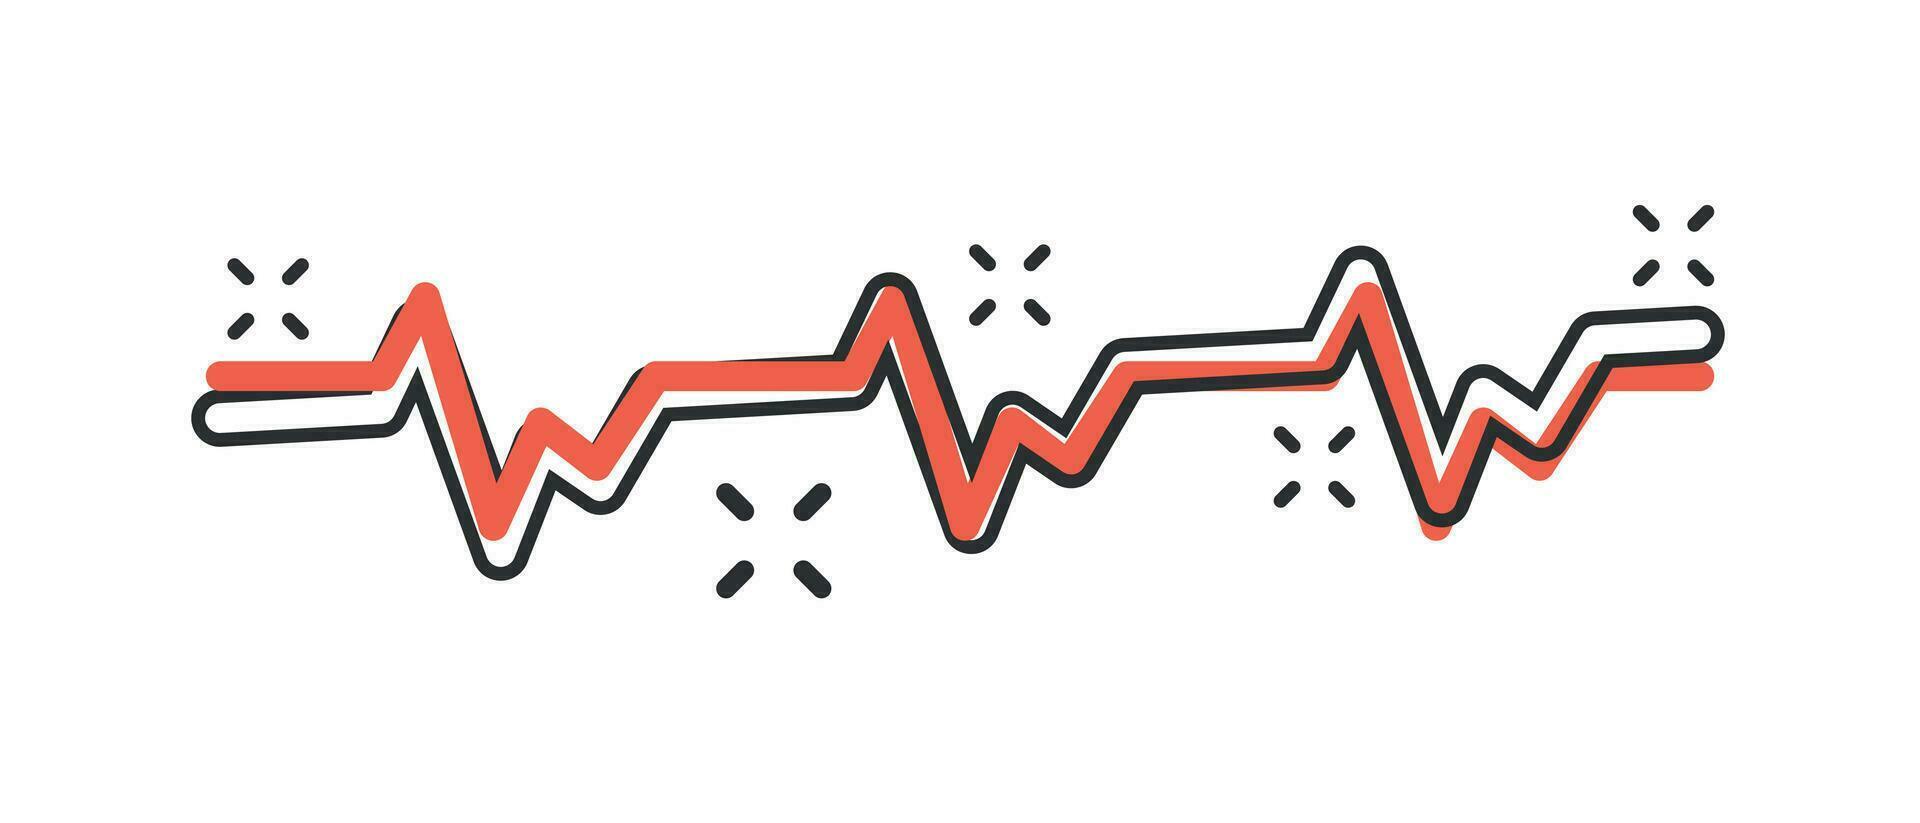 línea de latidos del corazón de dibujos animados vectoriales con icono del corazón en estilo cómico. Pictograma de ilustración del concepto de latido del corazón. concepto de efecto de salpicadura de negocios de ritmo cardíaco. vector